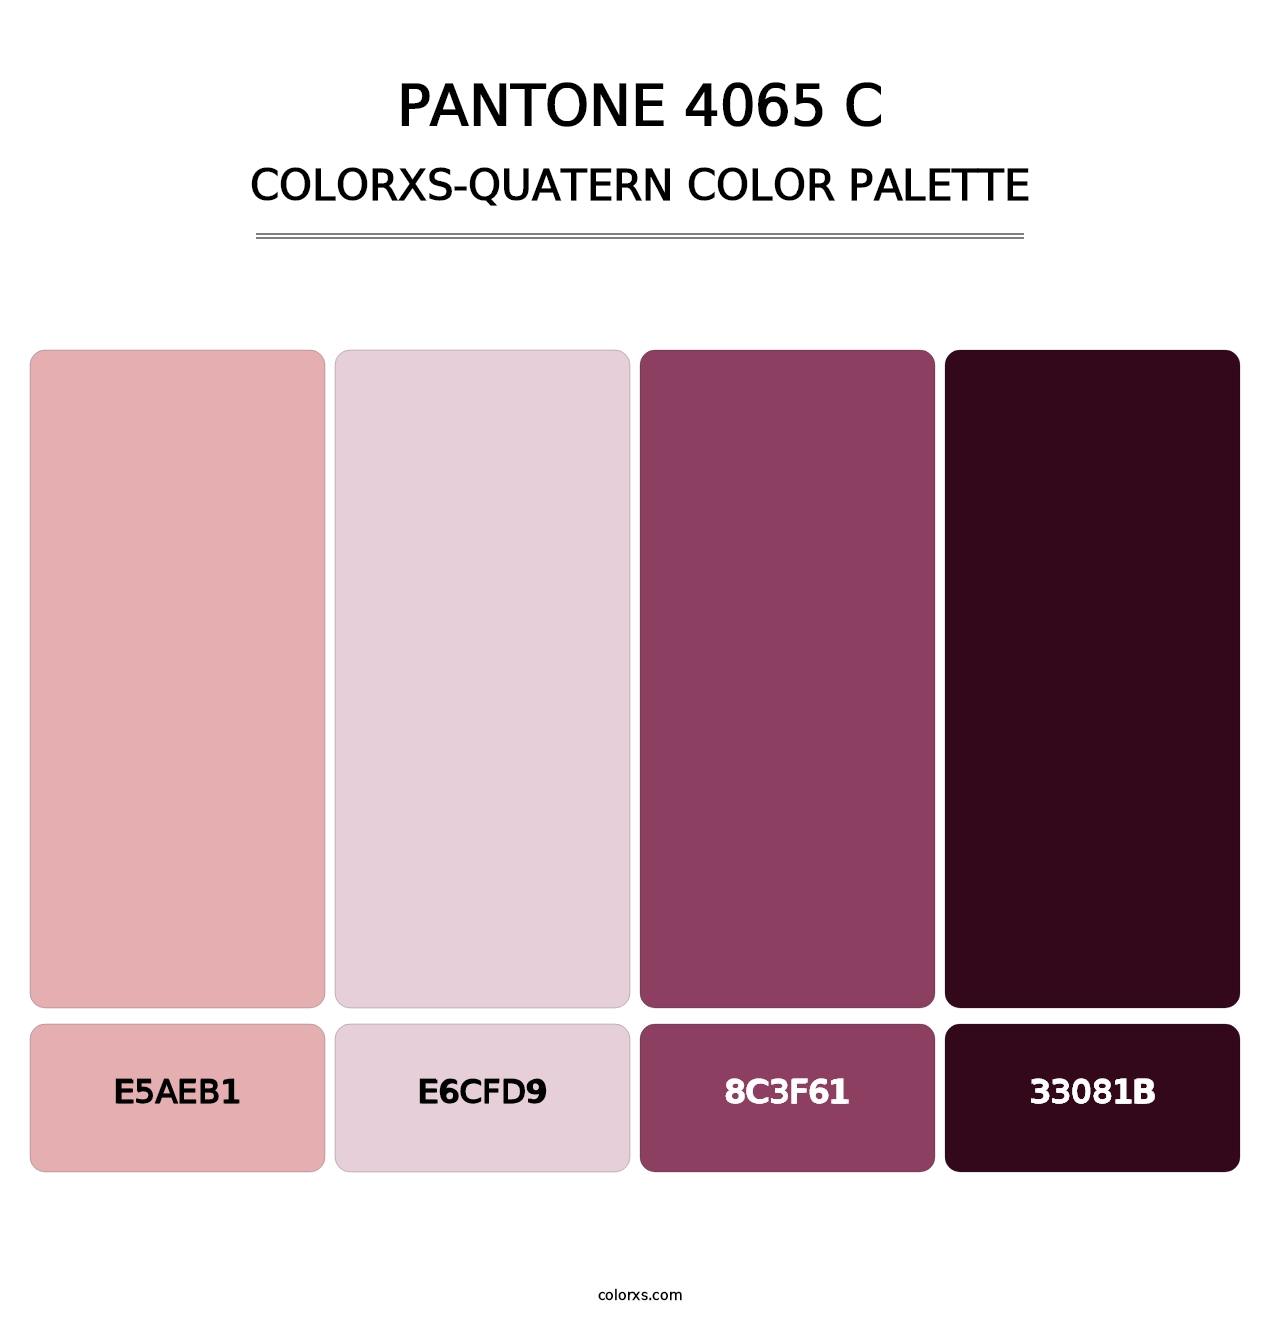 PANTONE 4065 C - Colorxs Quatern Palette